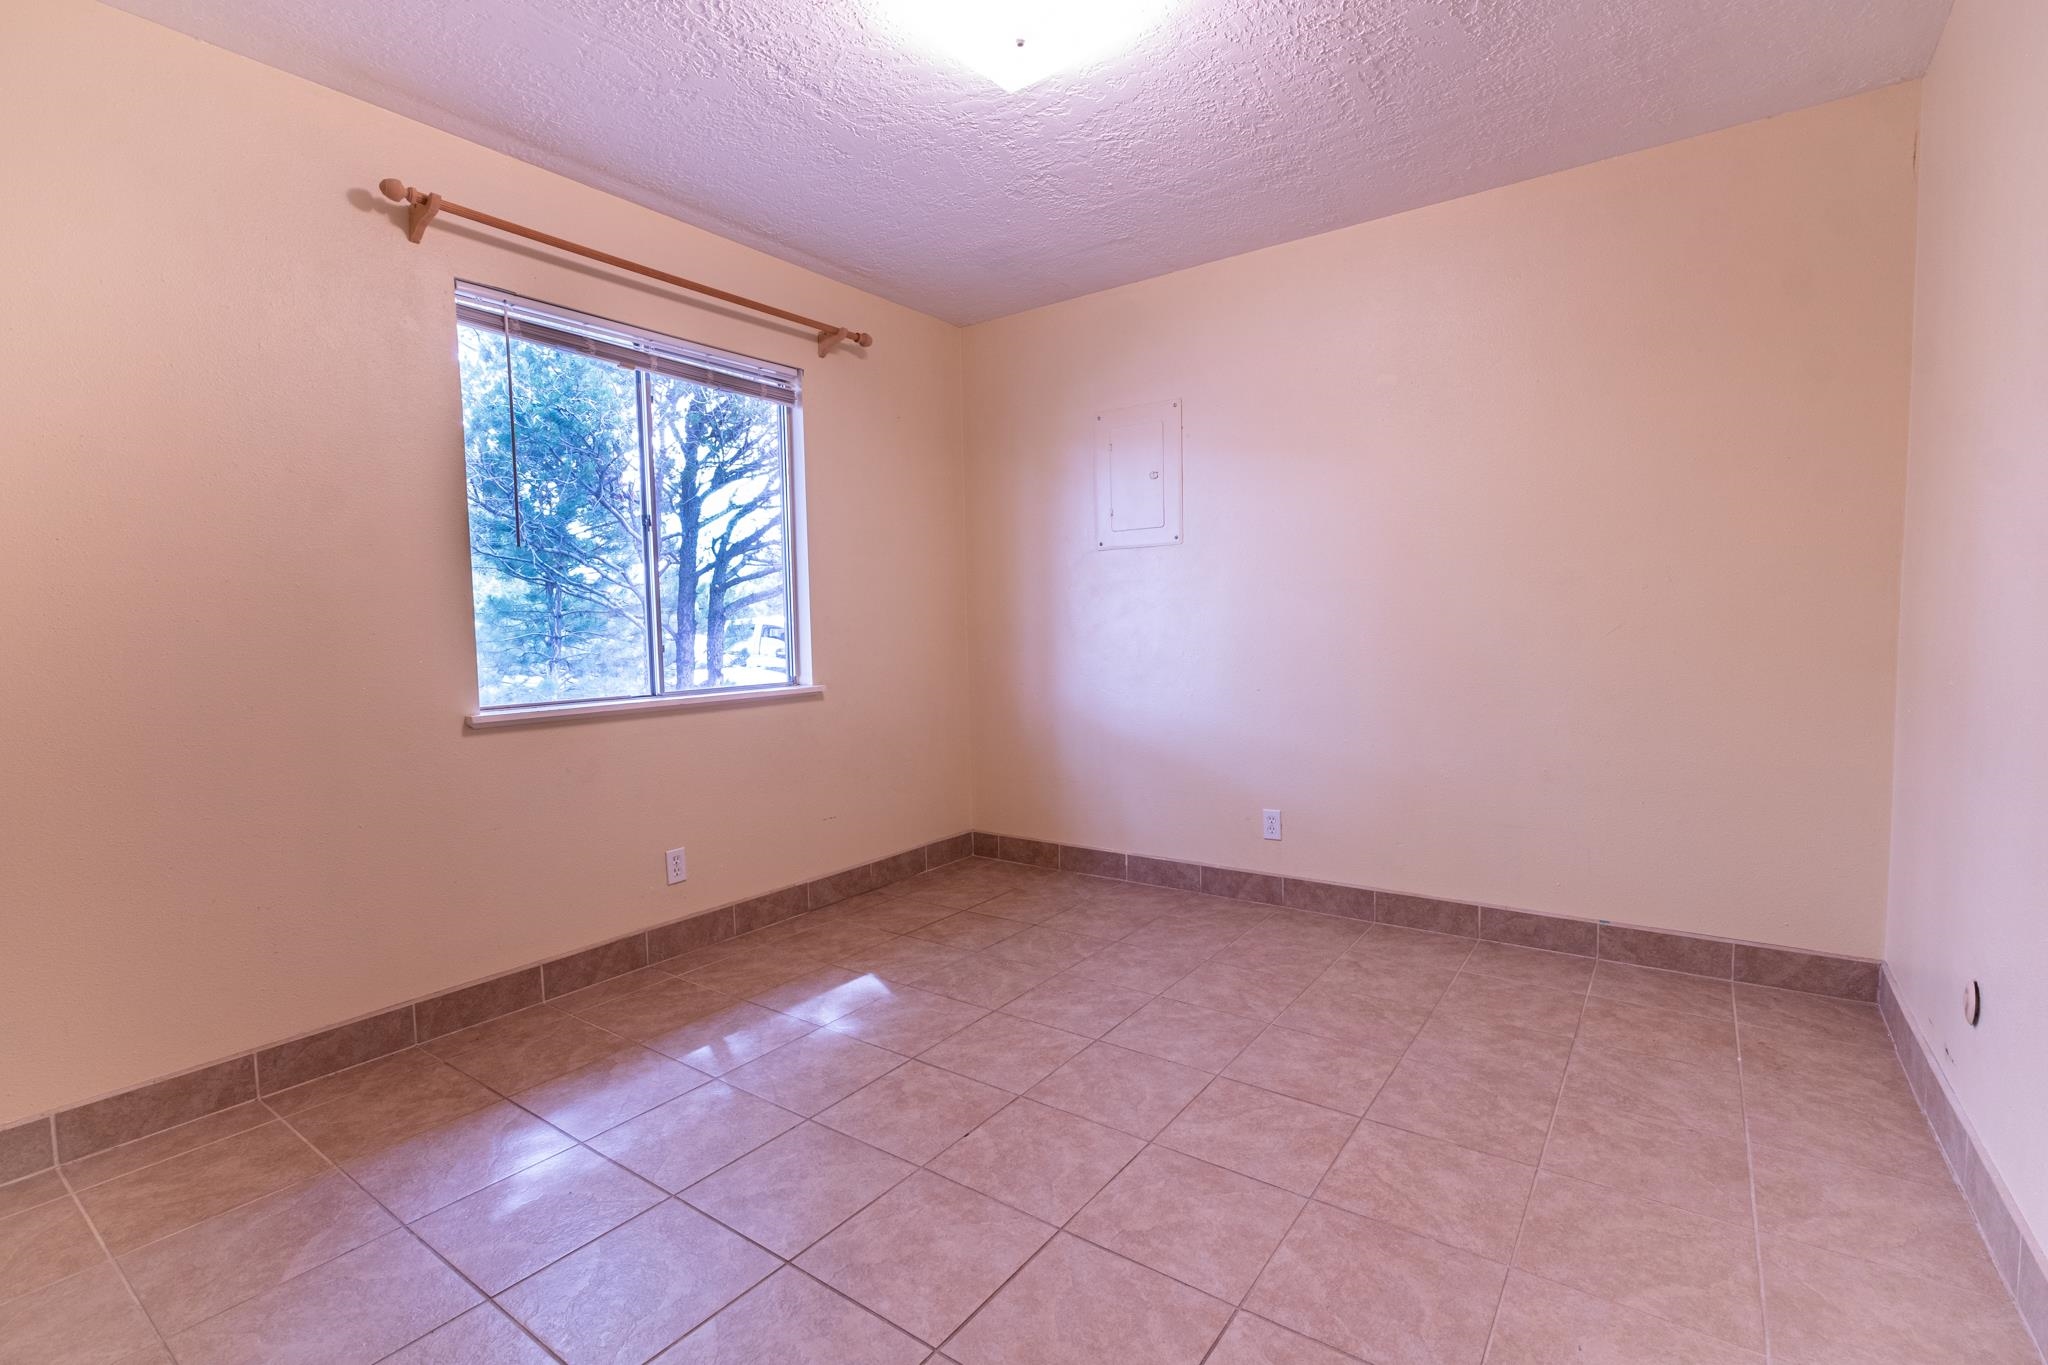 2823 CAMINO PRINCIPE, Santa Fe, New Mexico 87507, 3 Bedrooms Bedrooms, ,3 BathroomsBathrooms,Residential,For Sale,2823 CAMINO PRINCIPE,202103732